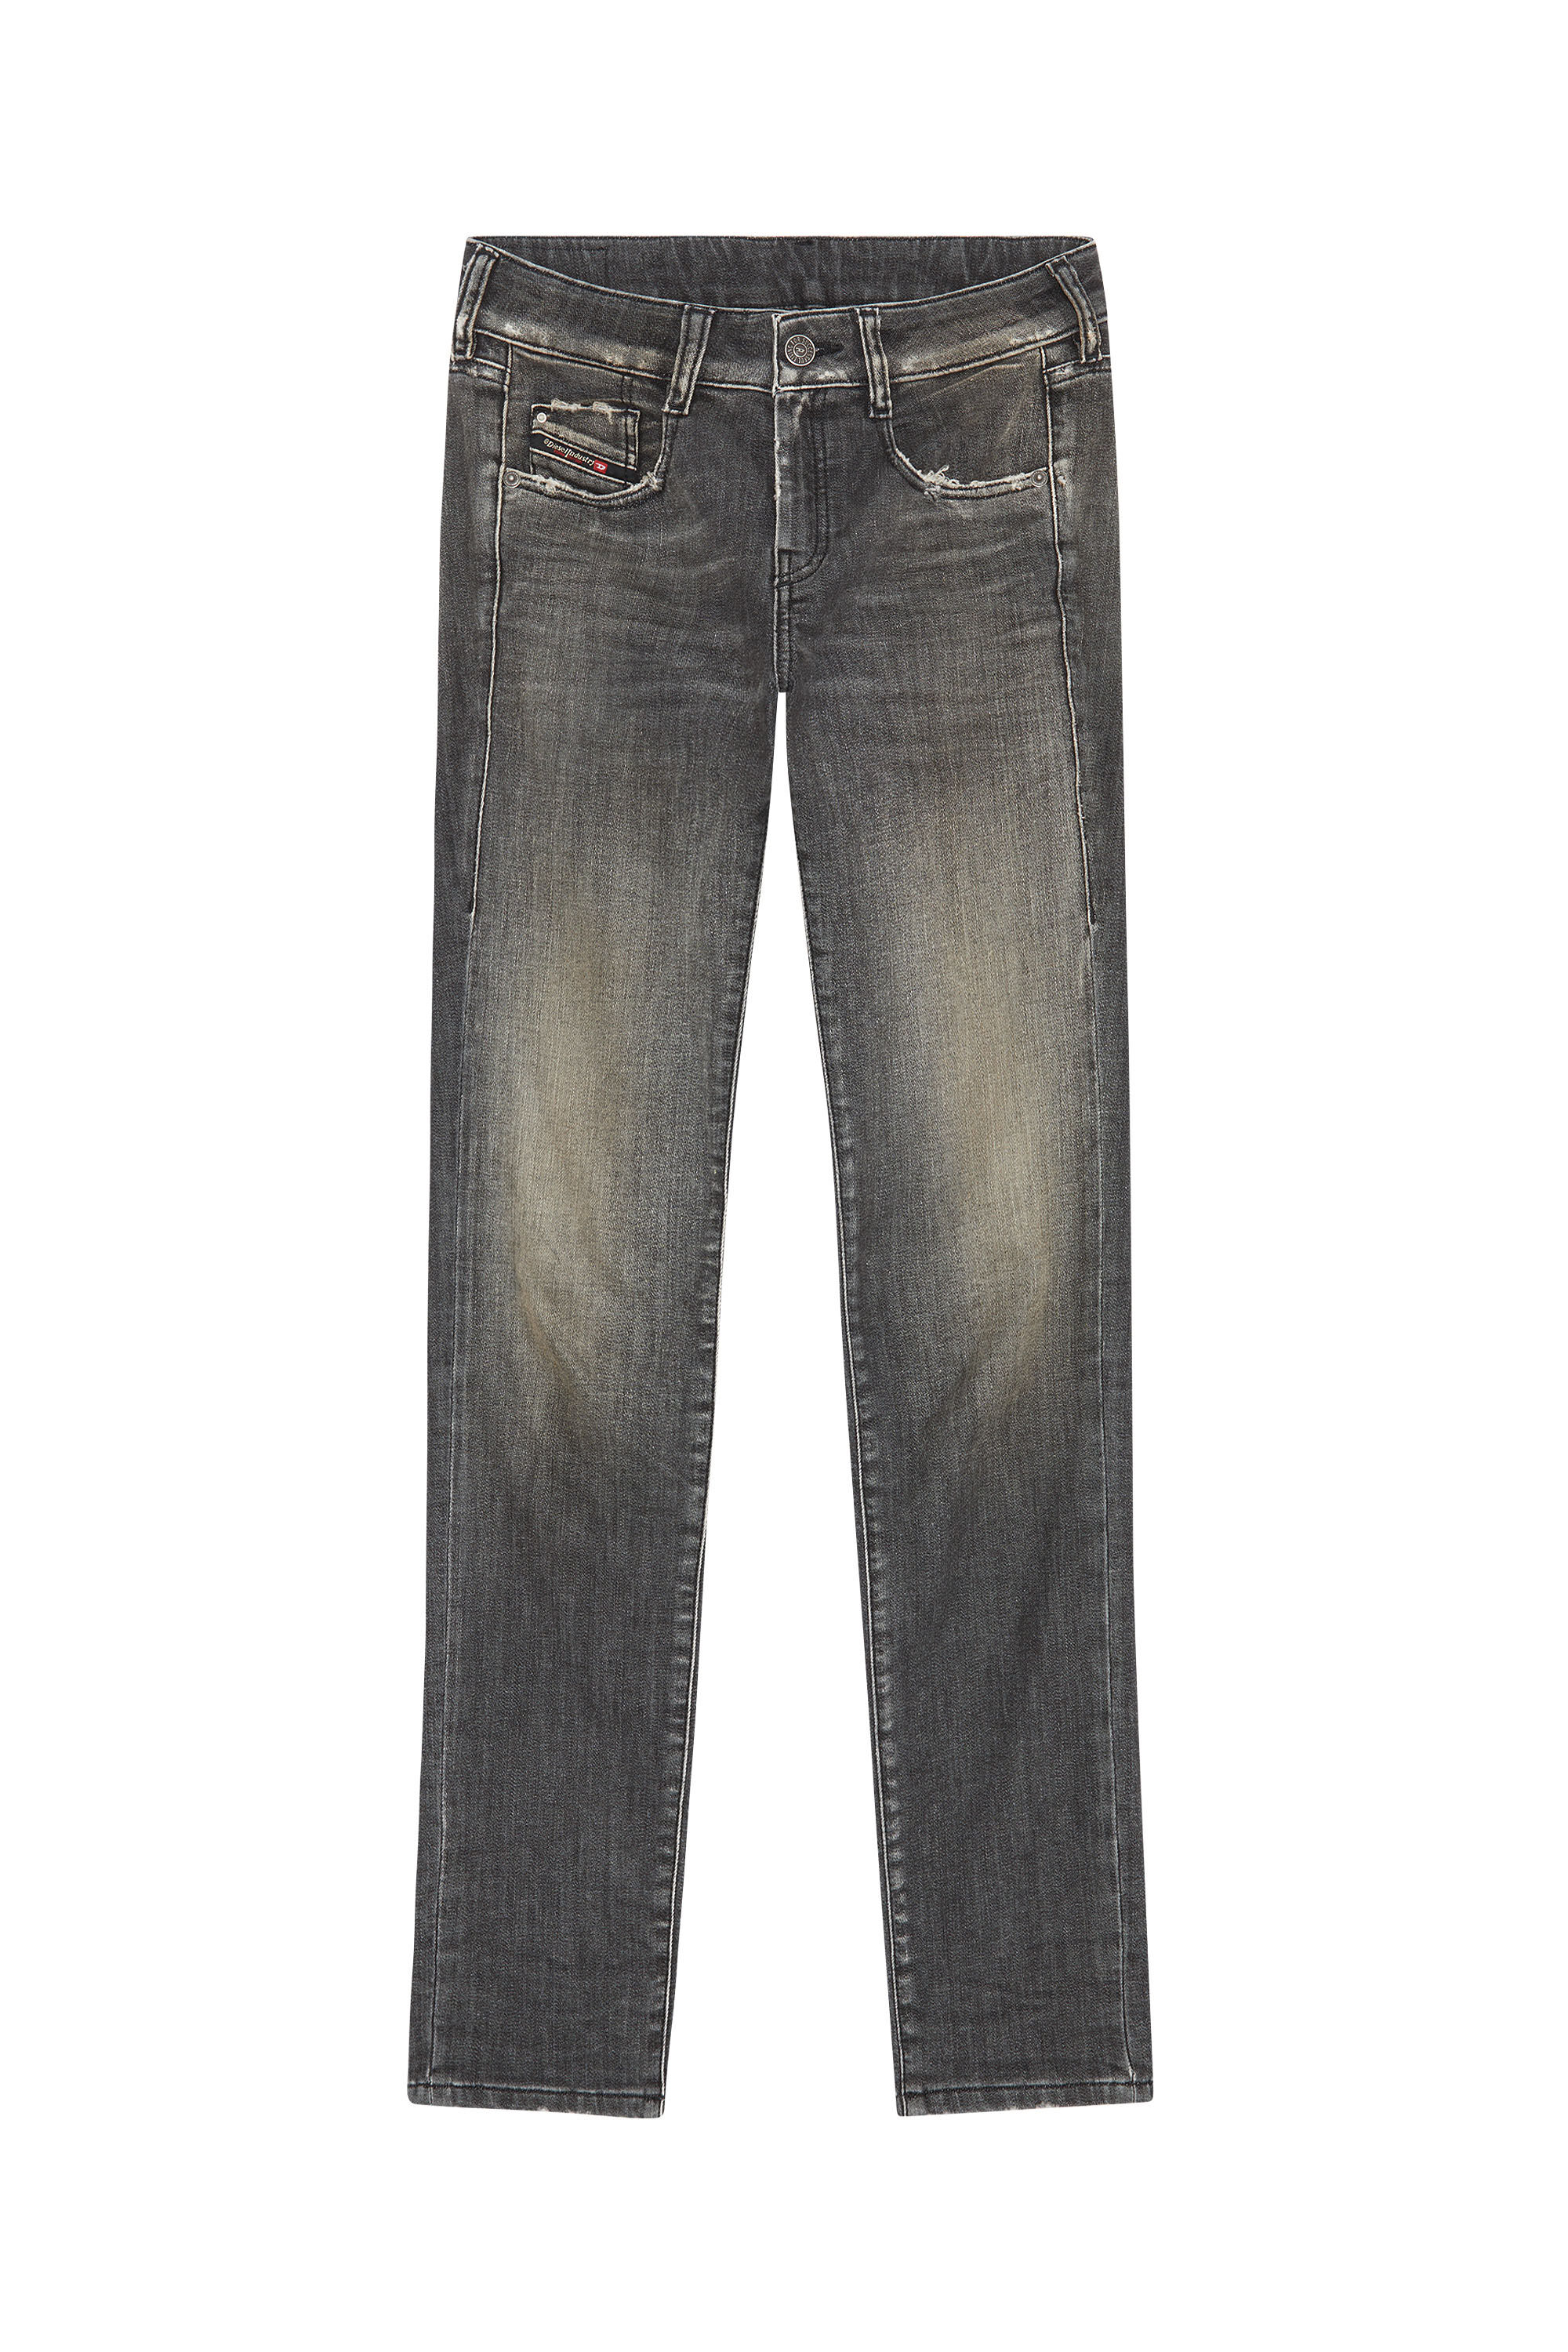 Diesel - D-Ollies JoggJeans® 09F01 Slim, Black/Dark grey - Image 2